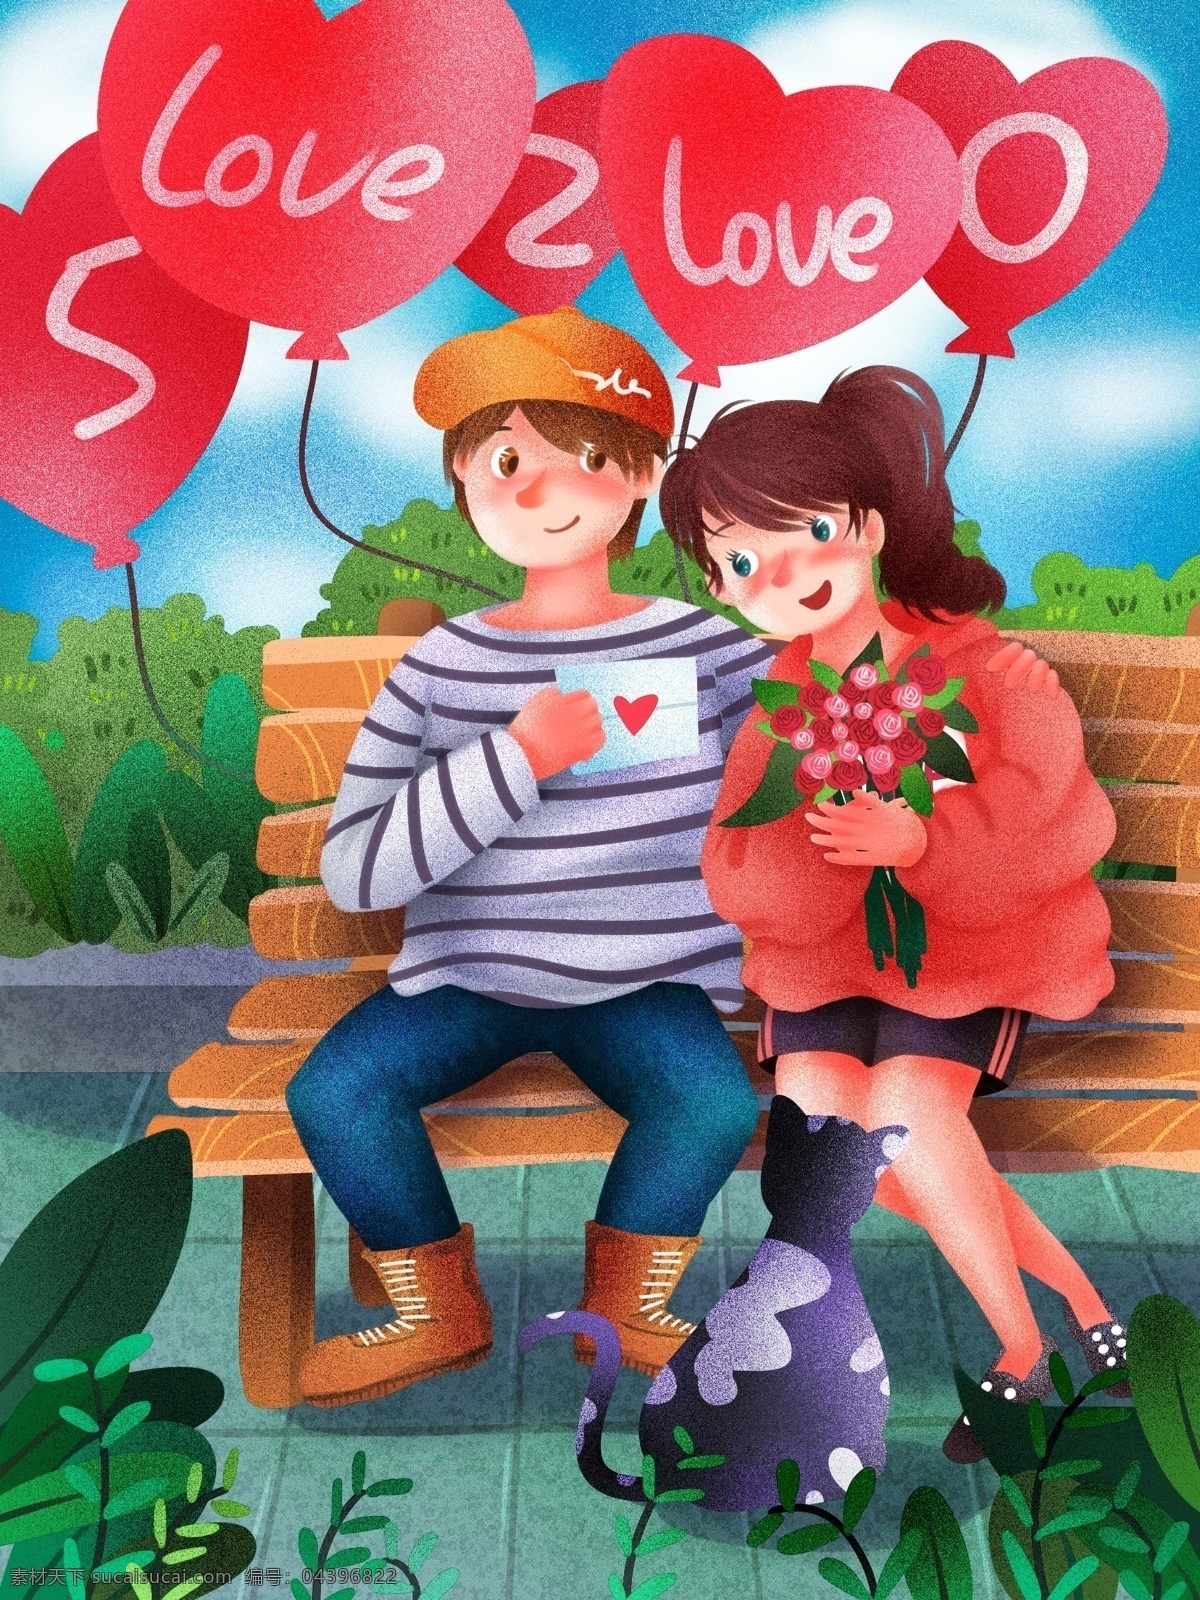 520 情侣 长椅 互相 表白 清新 浪漫 原创 插画 心形 气球 粉红 玫瑰花 表白信 依偎 猫咪 植物